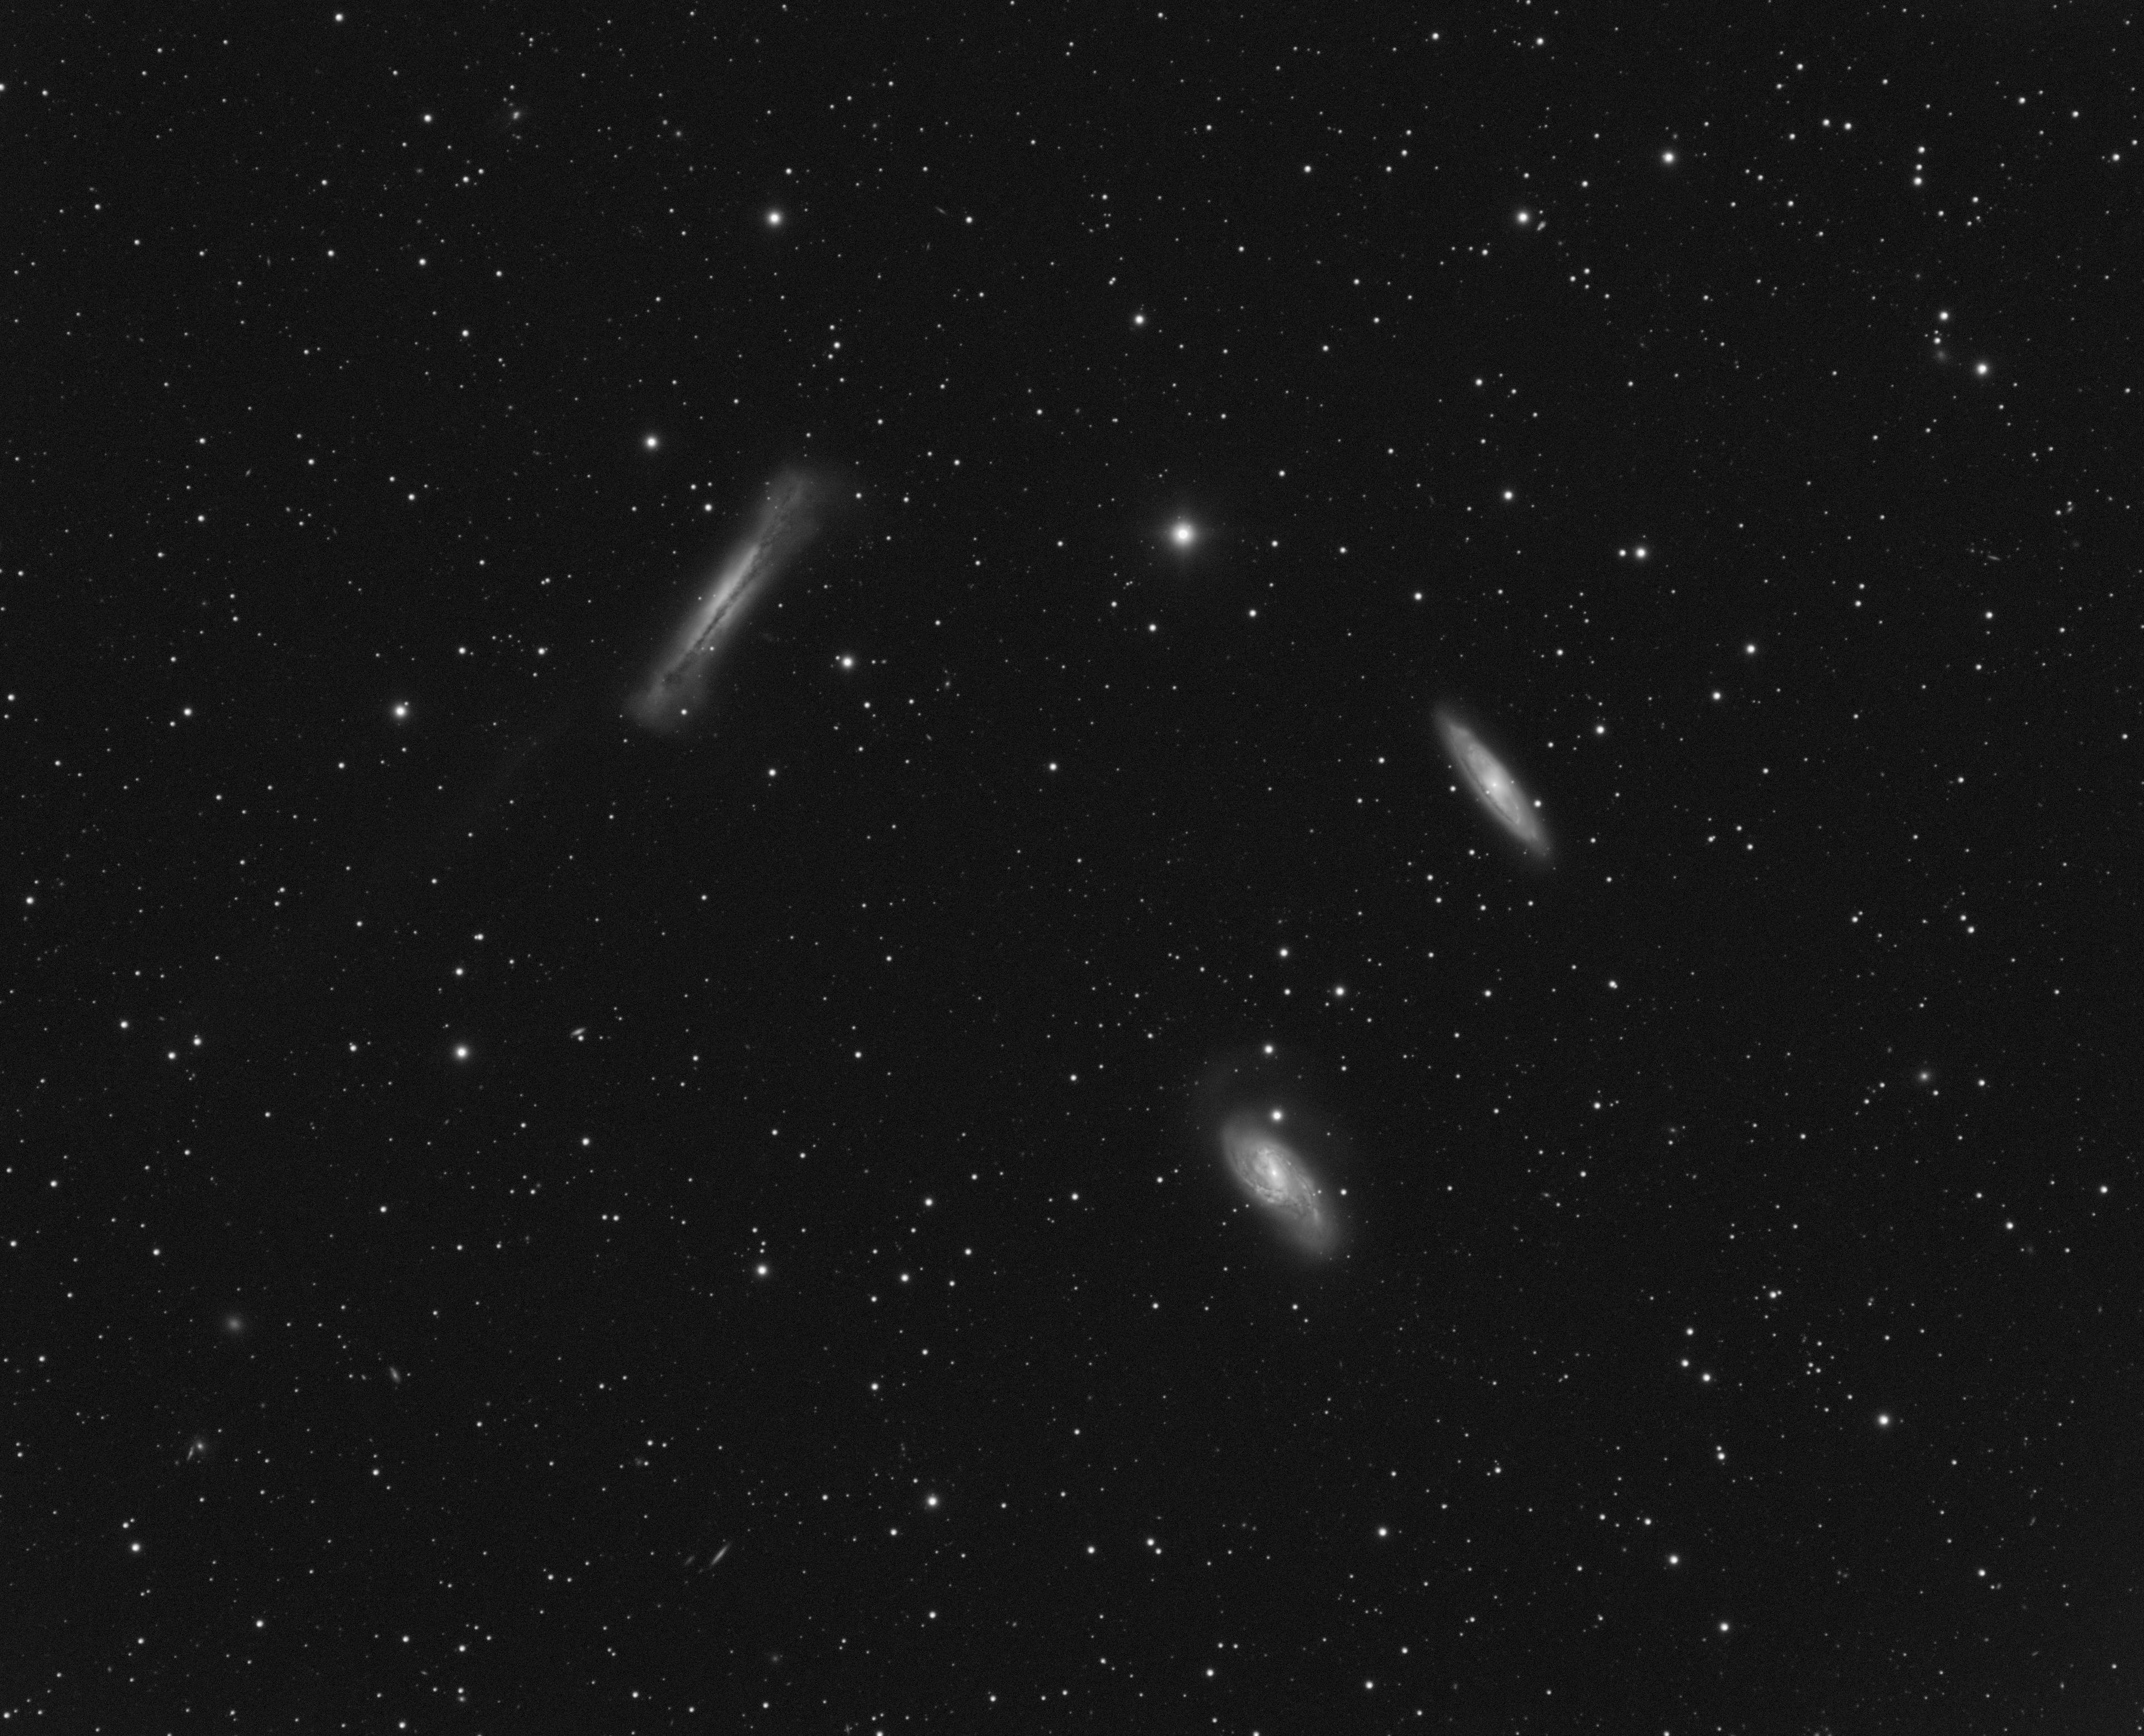 NGC 3628 / M65 / M66 